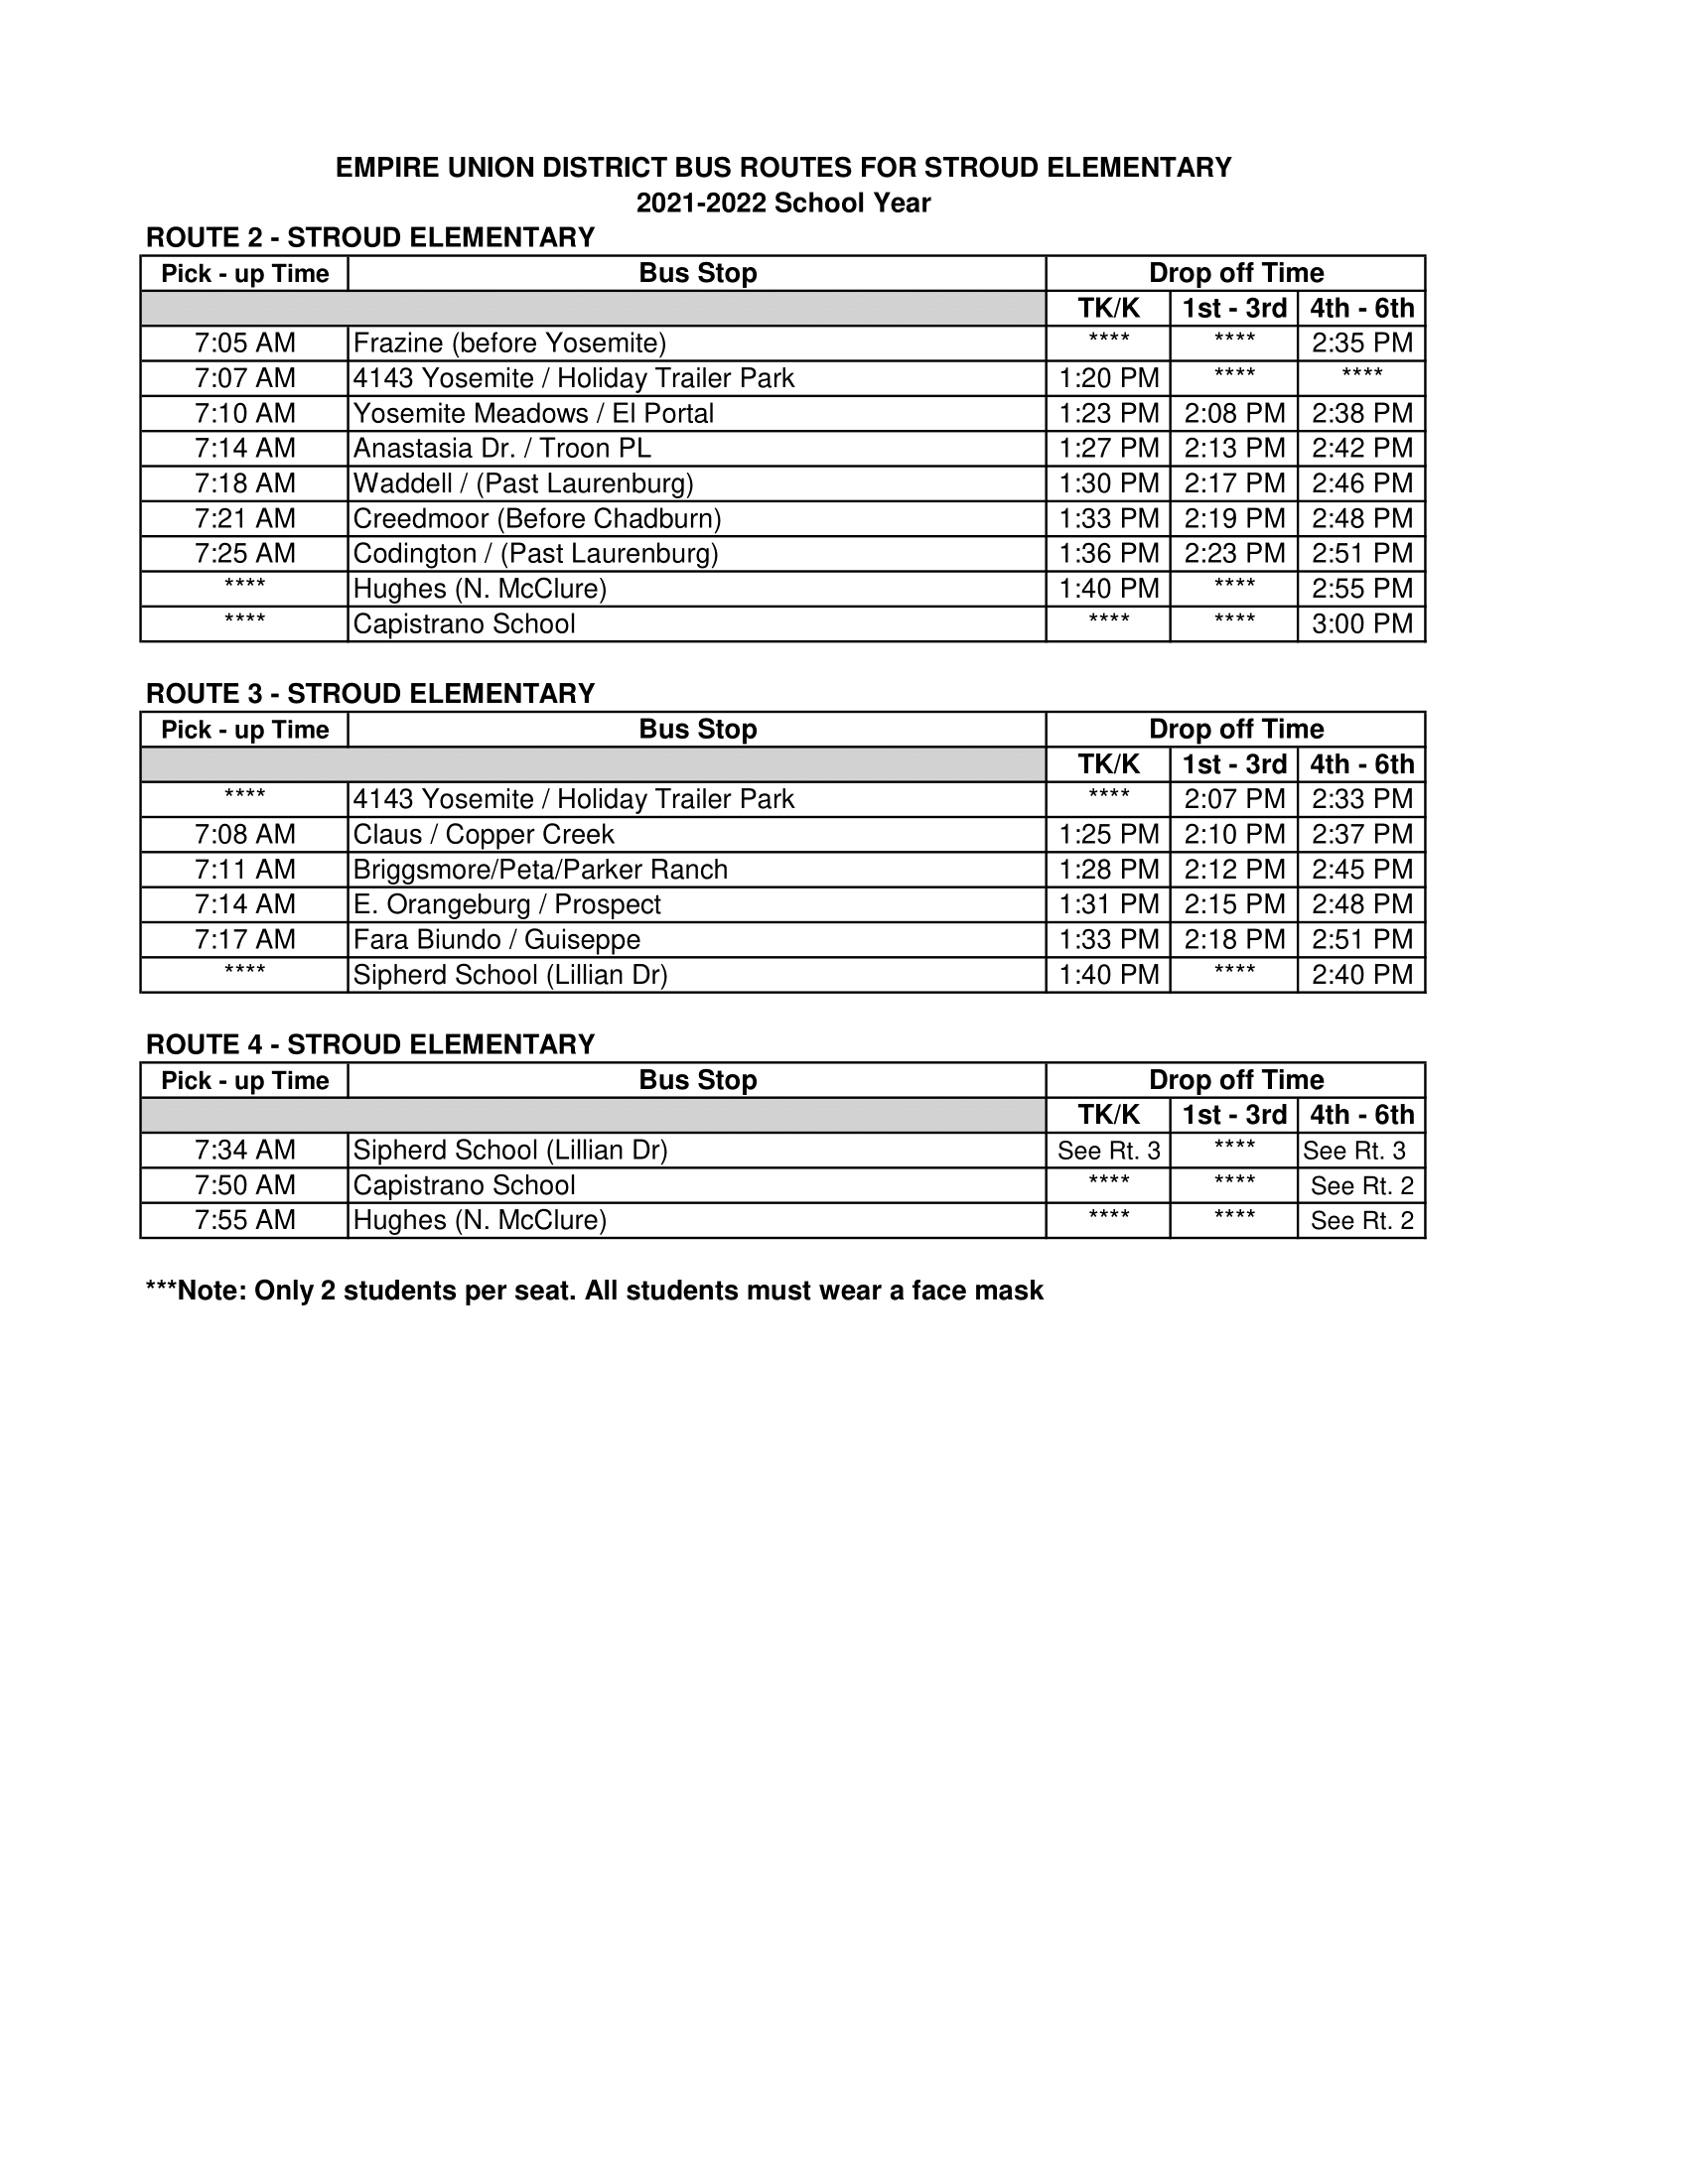 21-22 Stroud Bus Routes